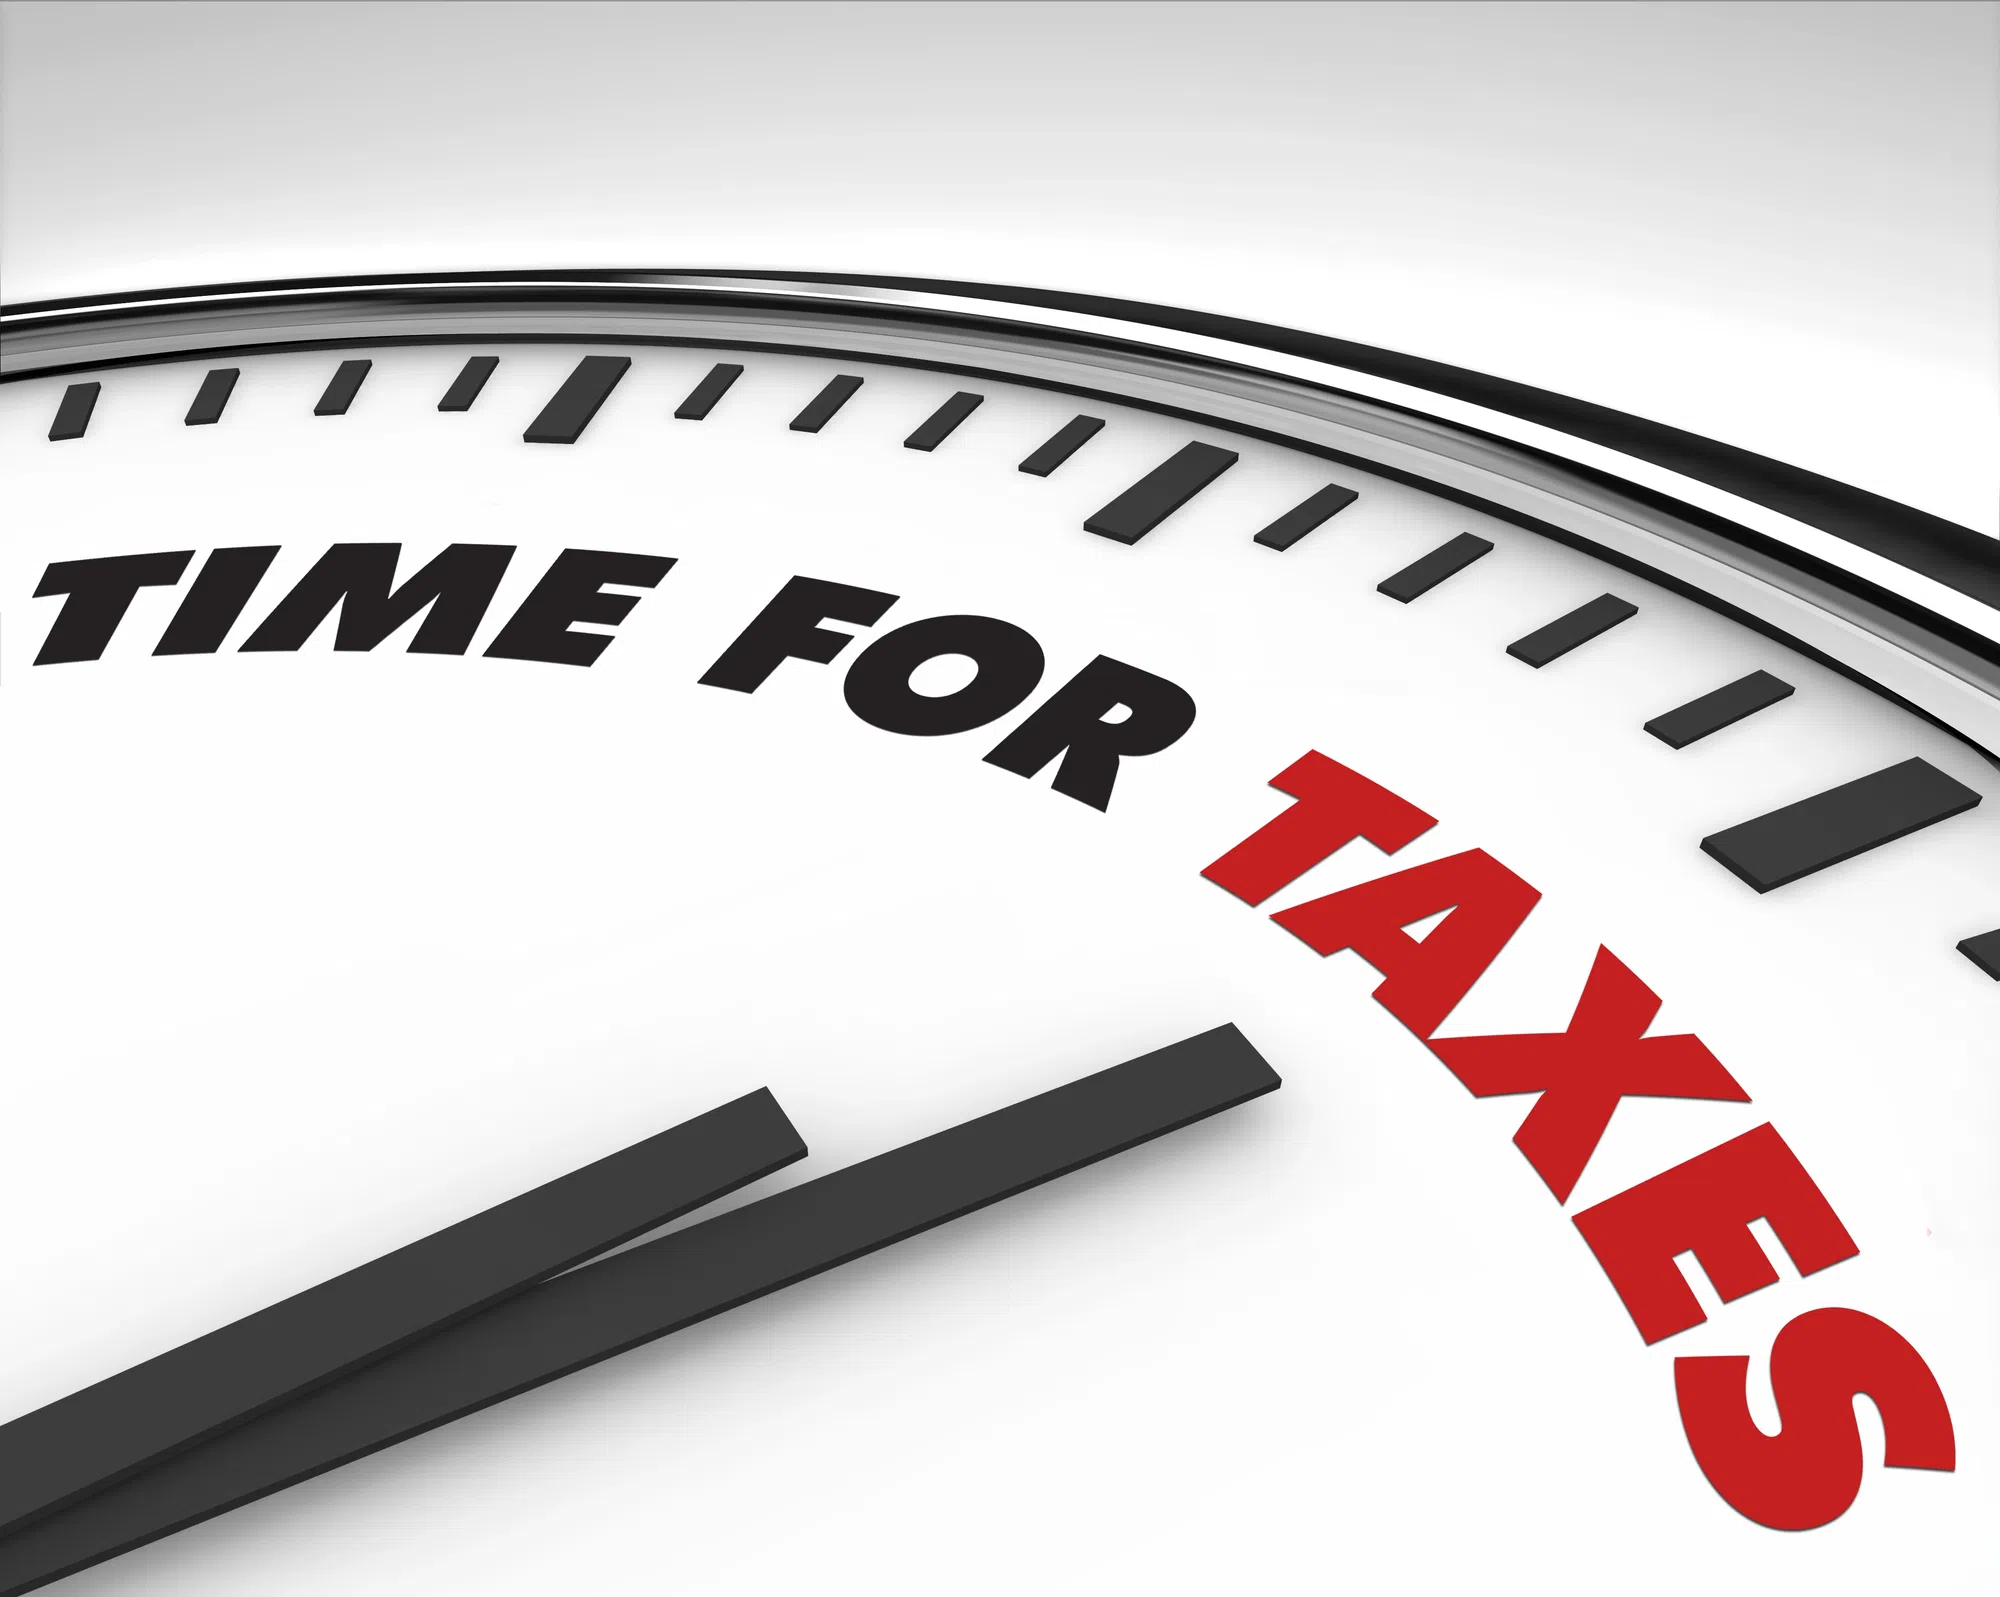 It's tax time!